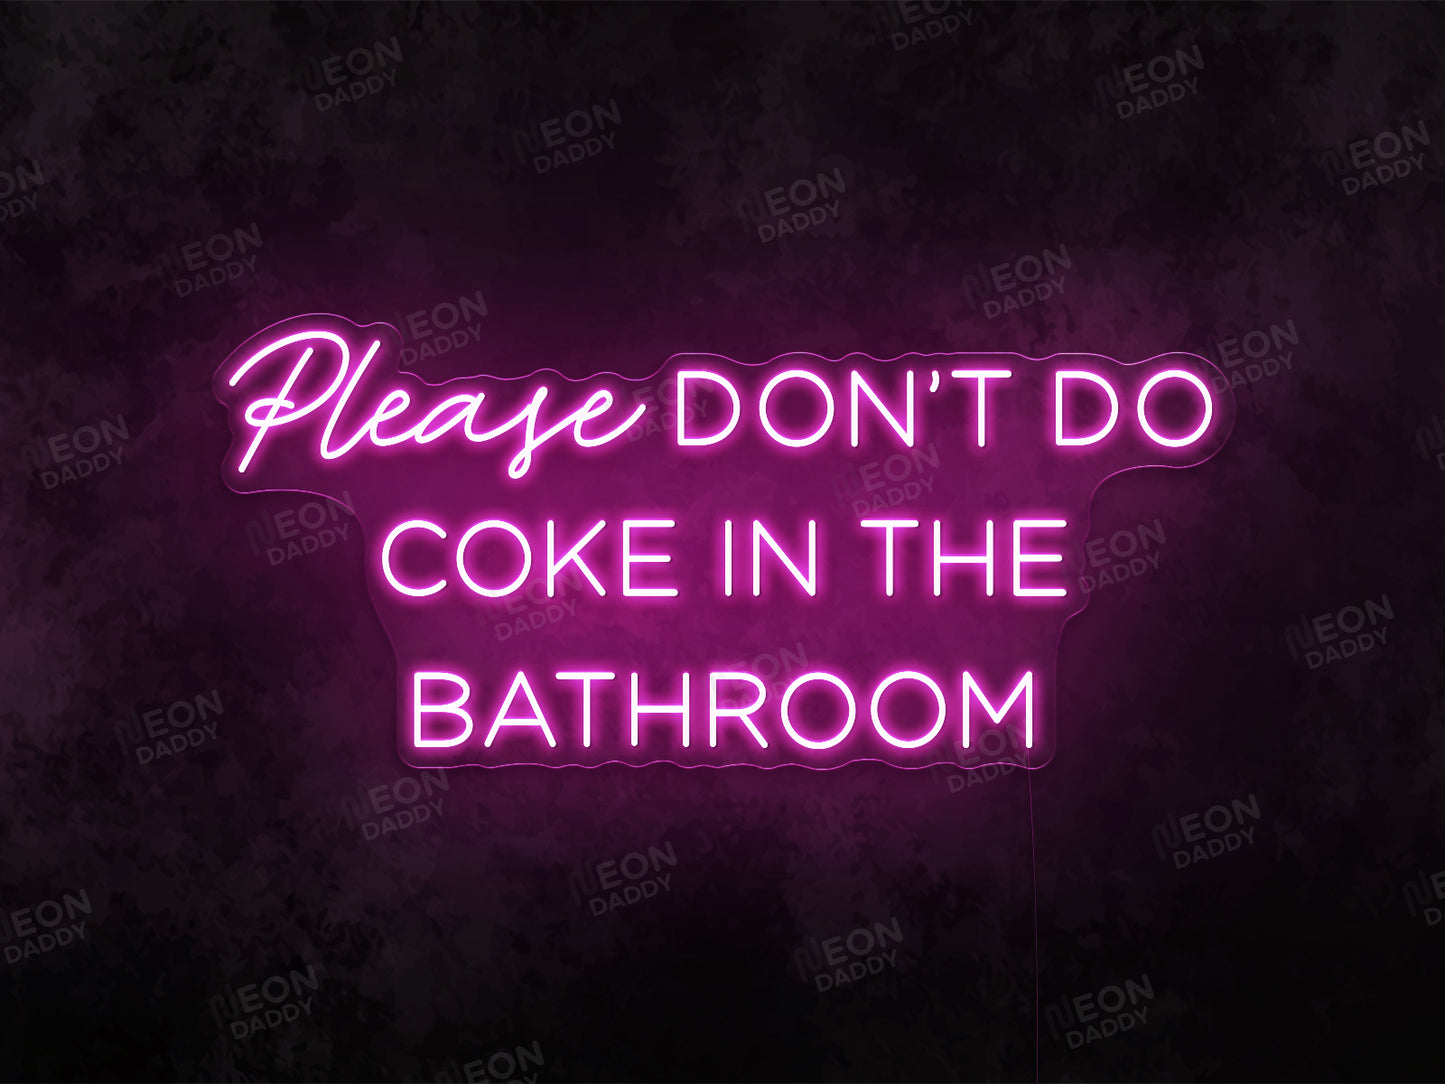 Please don't do coke in...